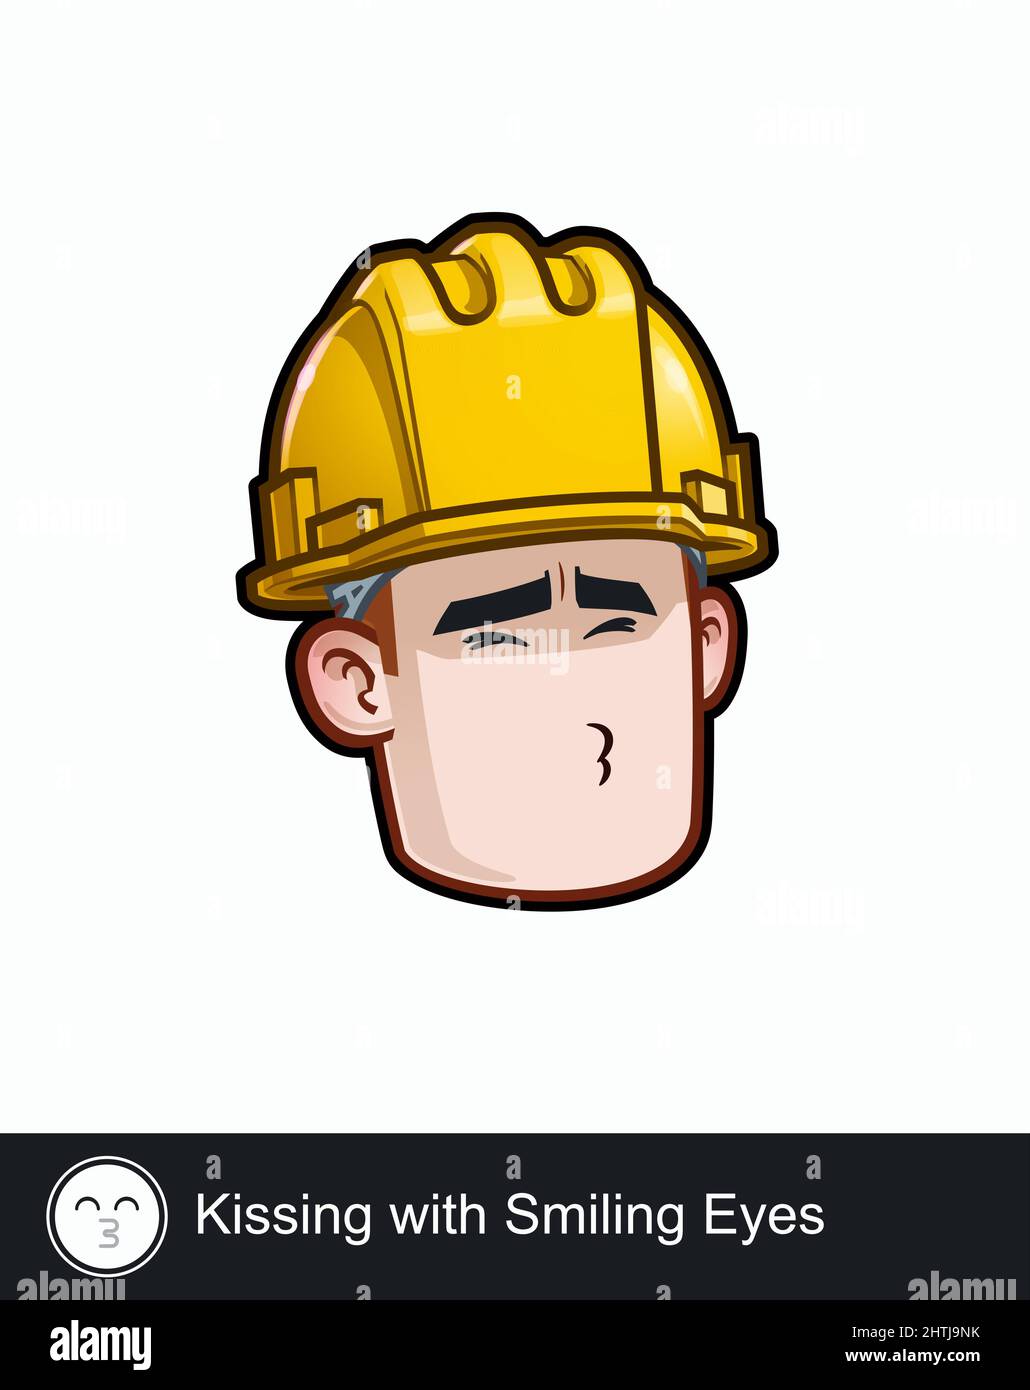 Ikone eines Bauarbeiters Gesicht mit Küssen mit lächelnden Augen emotionaler Ausdruck. Alle Elemente übersichtlich auf gut beschriebenen Ebenen und Gruppen. Stock Vektor